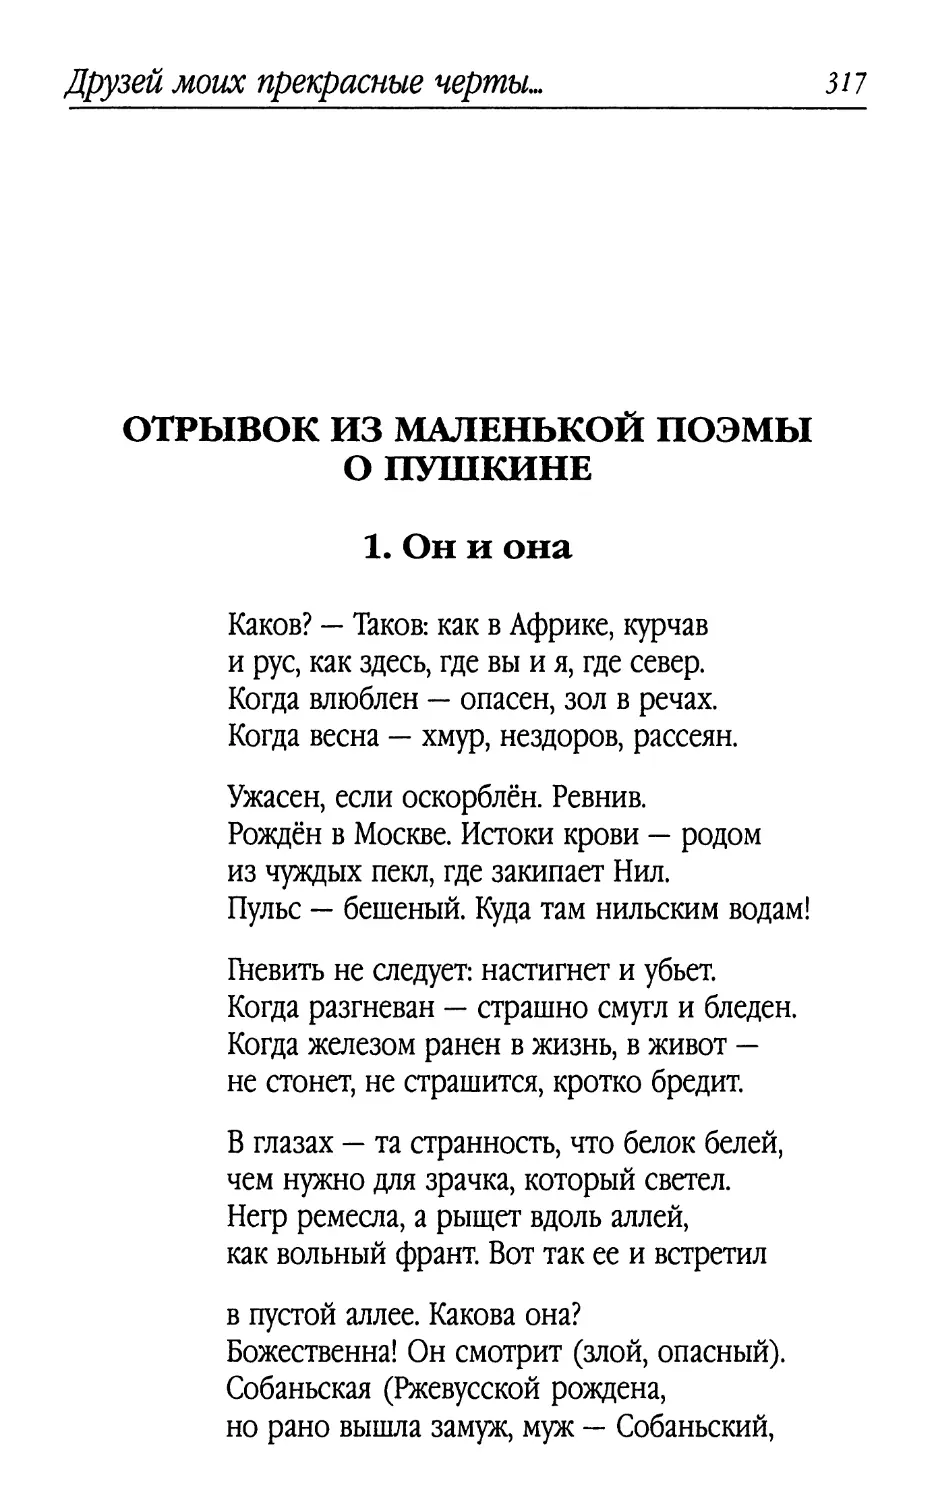 Отрывок из маленькой поэмы о Пушкине